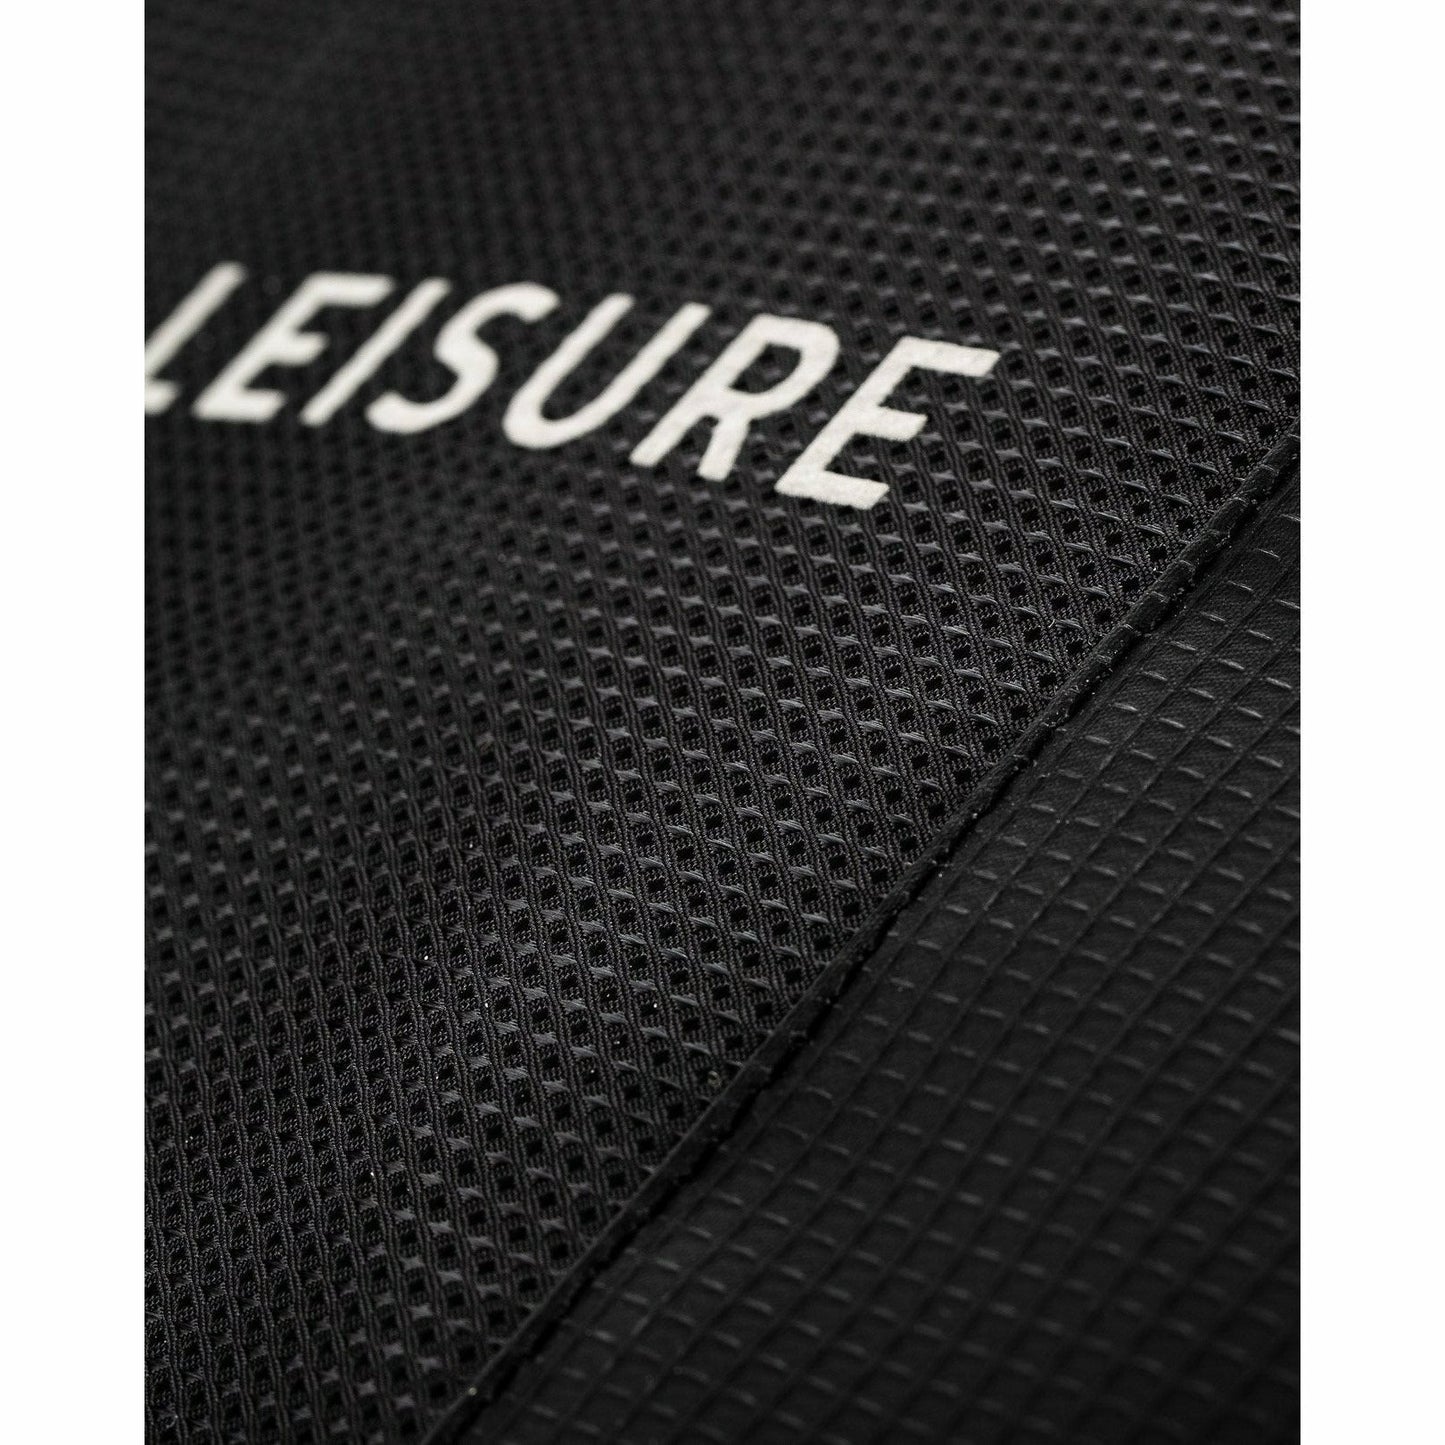 Creatures of Leisure - Shortboard Double DT2.0 : Black